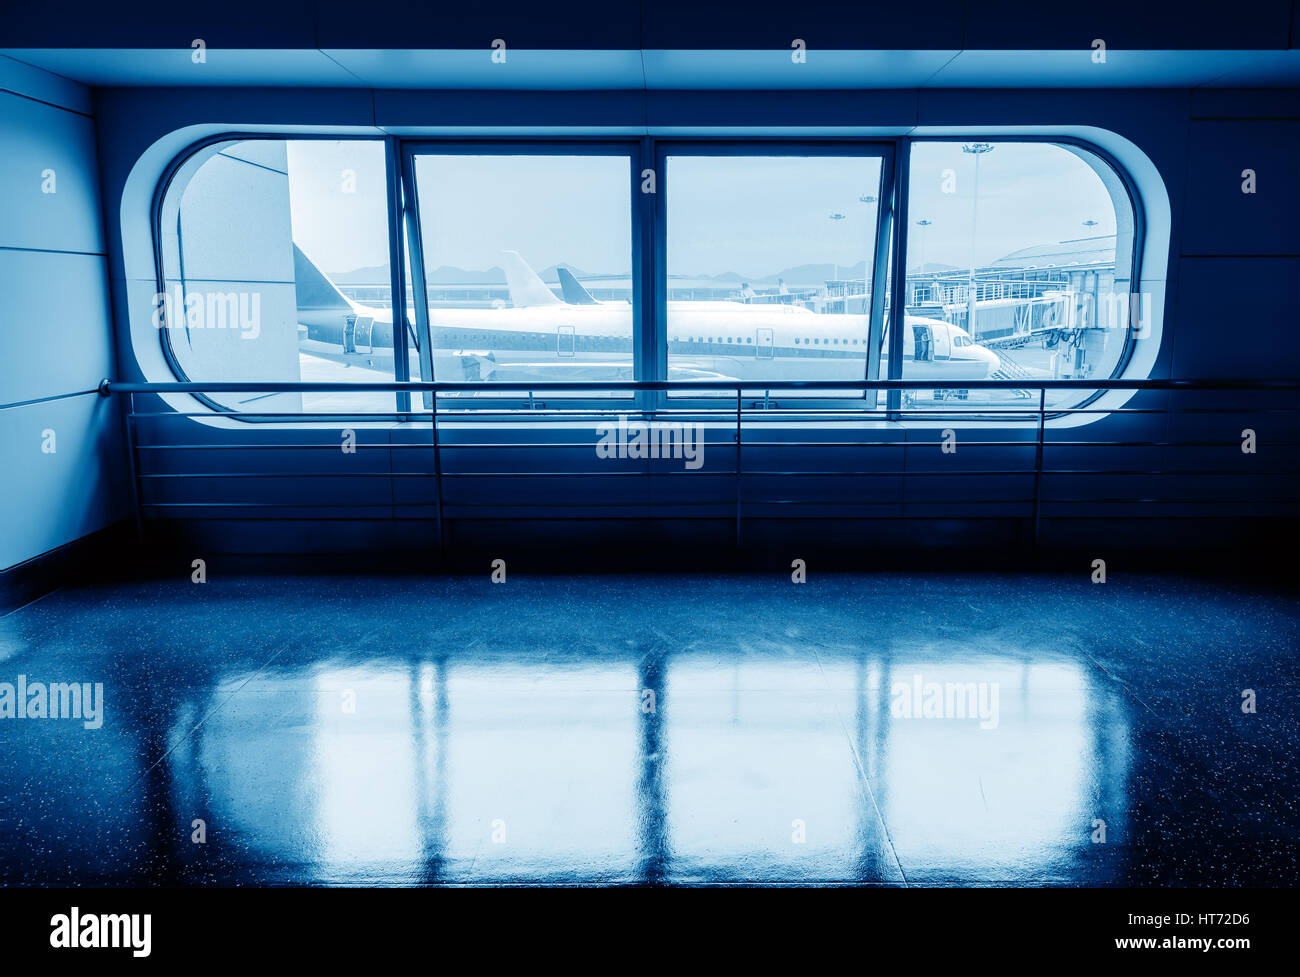 Vliegtuigen boarding brug en uit het raam, blauwe tint. Stock Photo